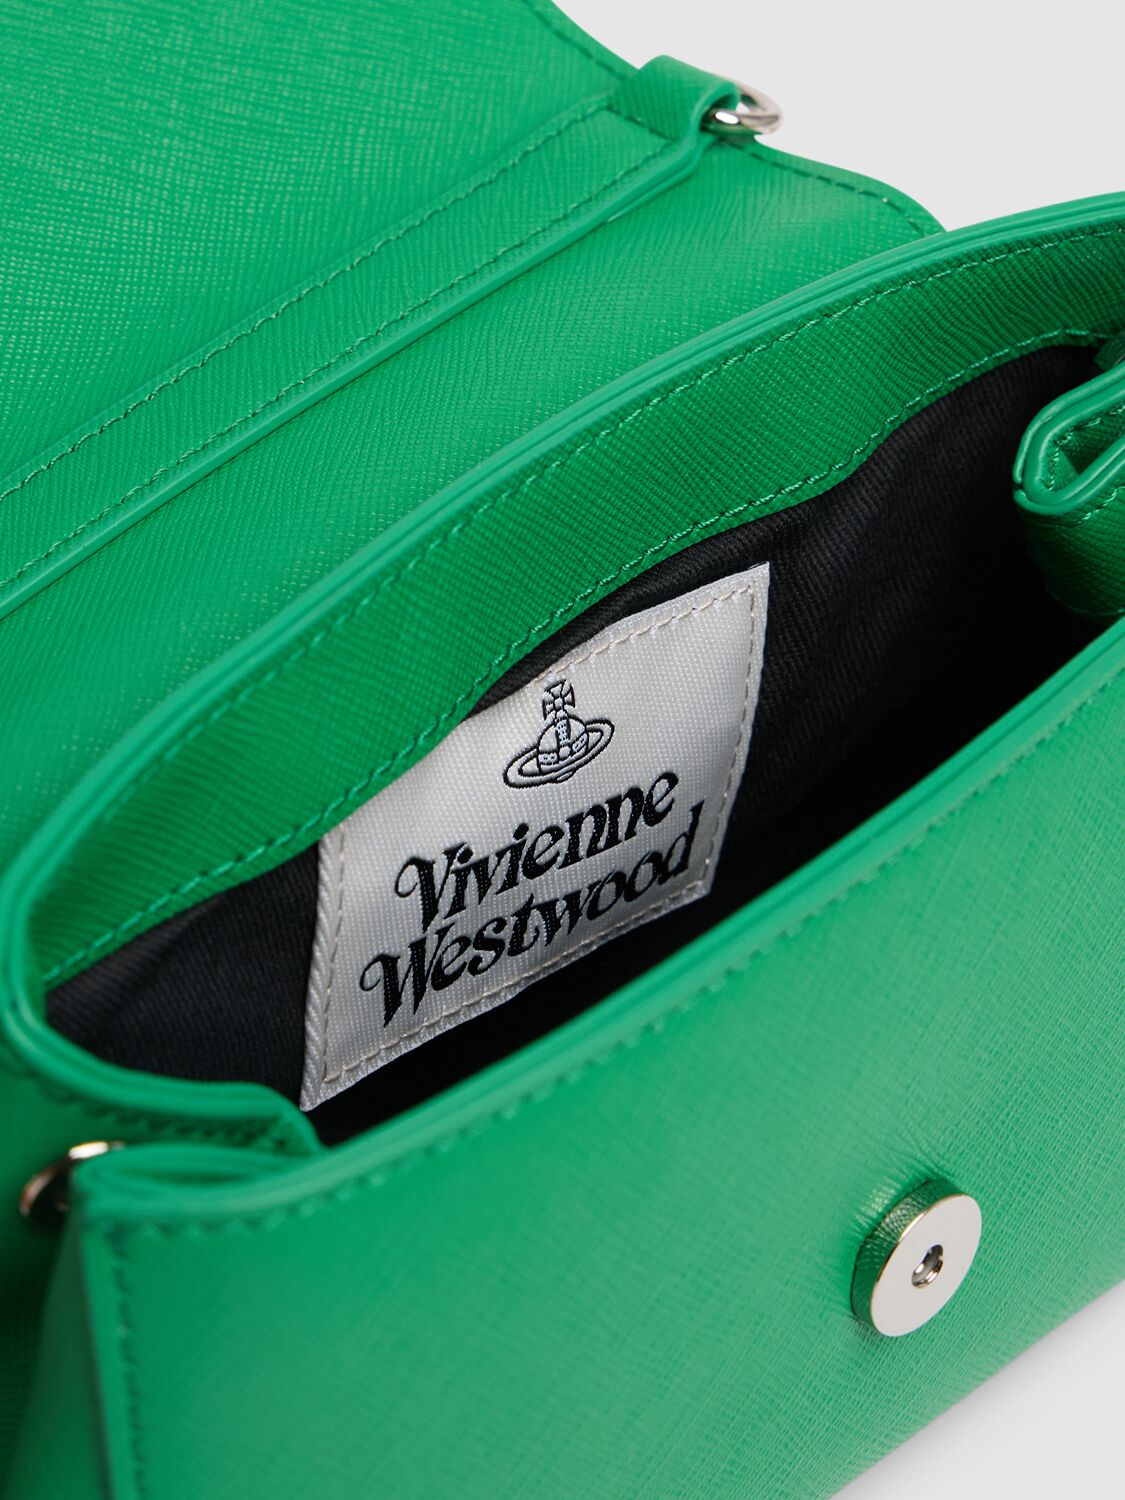 Shop Vivienne Westwood Small Hazel Re-vegan Shoulder Bag In Bright Green